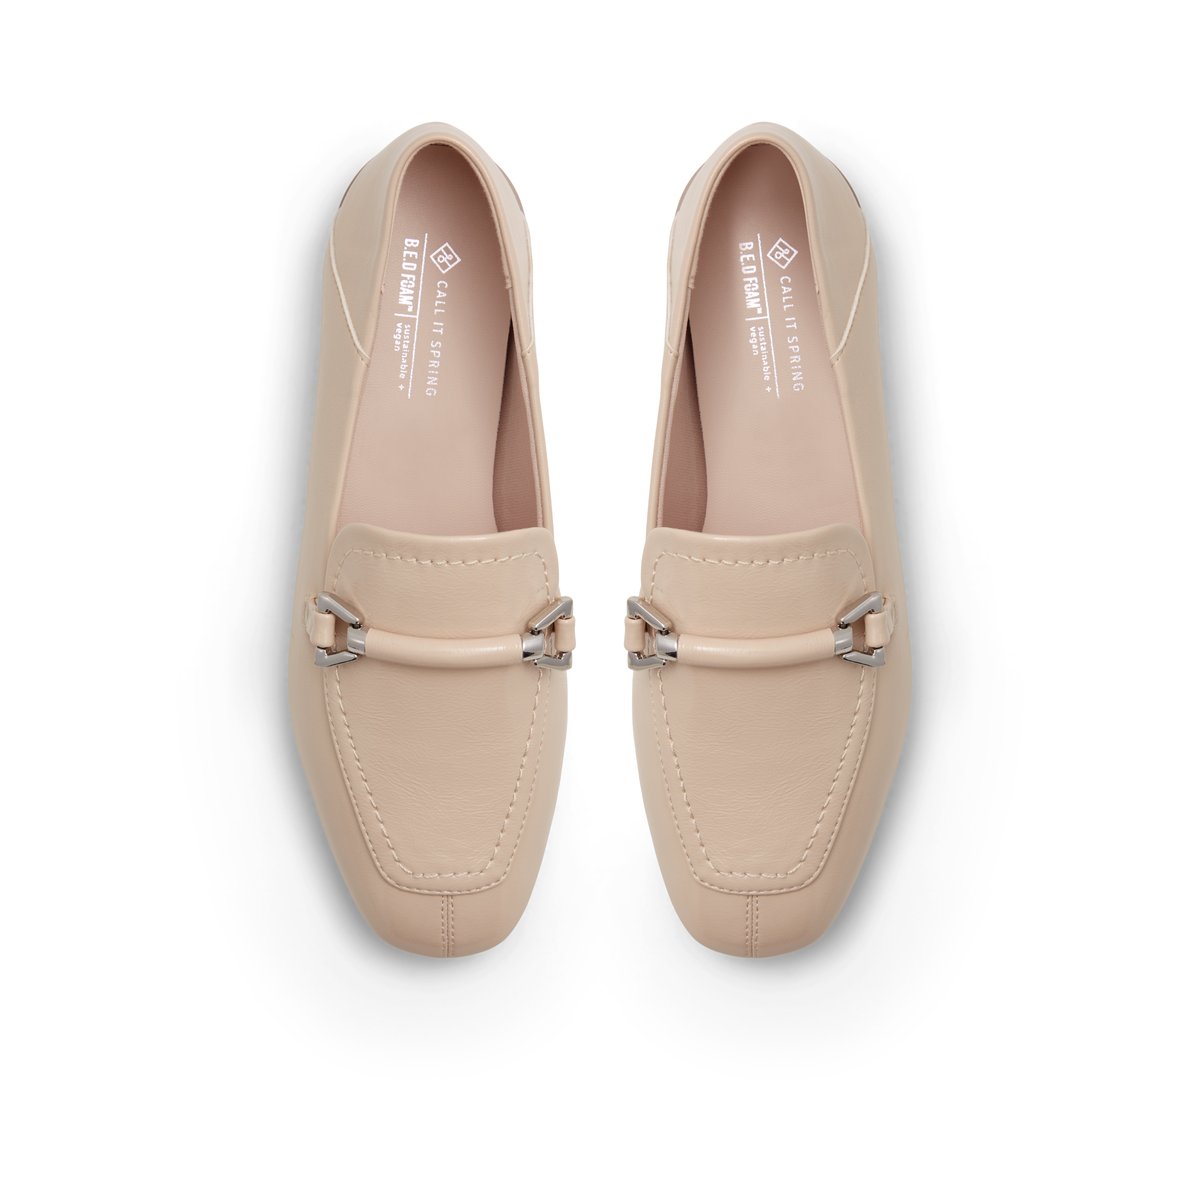 Hadleyy Women Shoes - Light Beige - CALL IT SPRING KSA